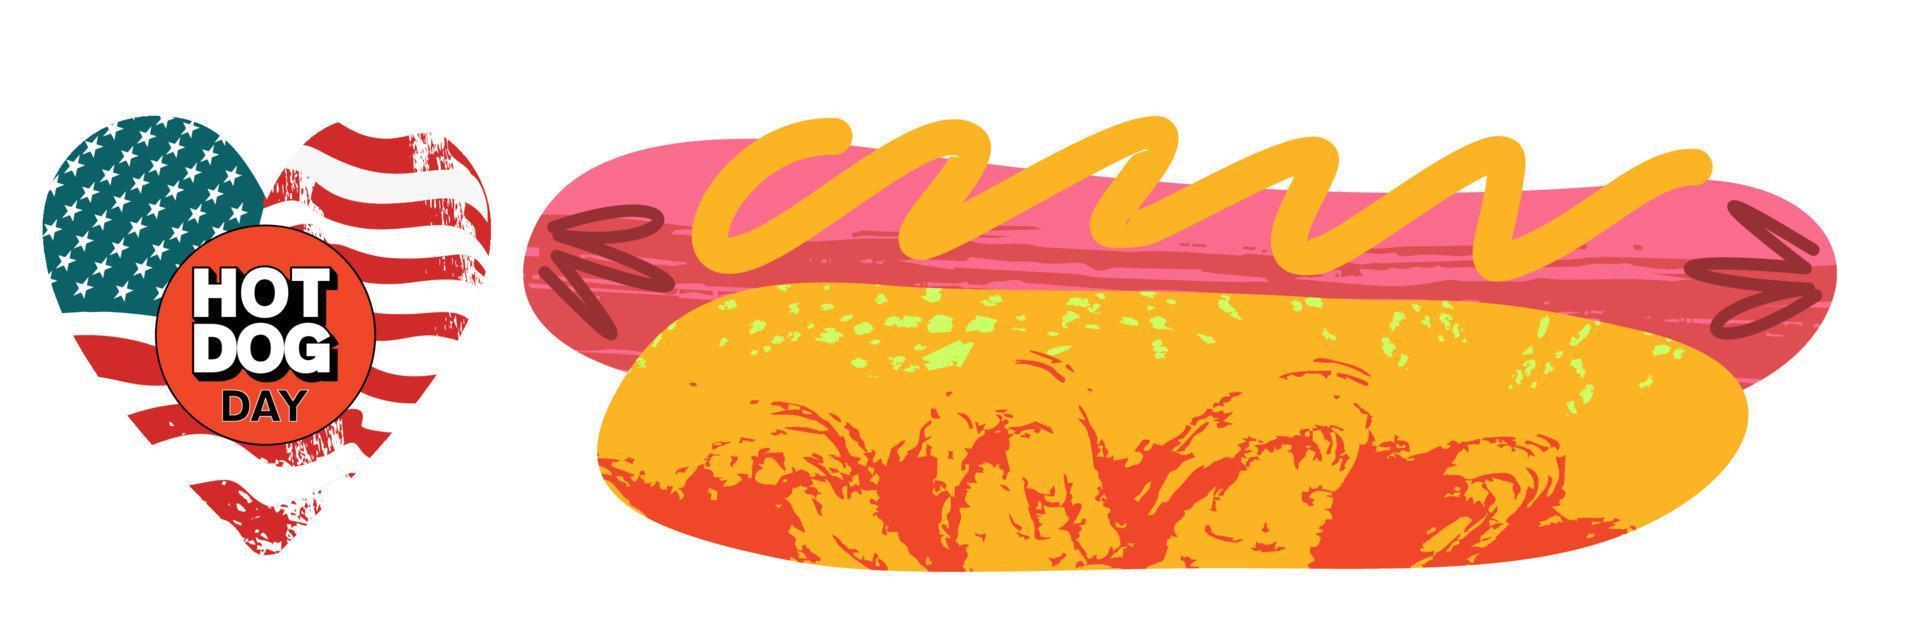 Hot-dog. Fast food. saucisse dans un petit pain. illustration vectorielle. vecteur